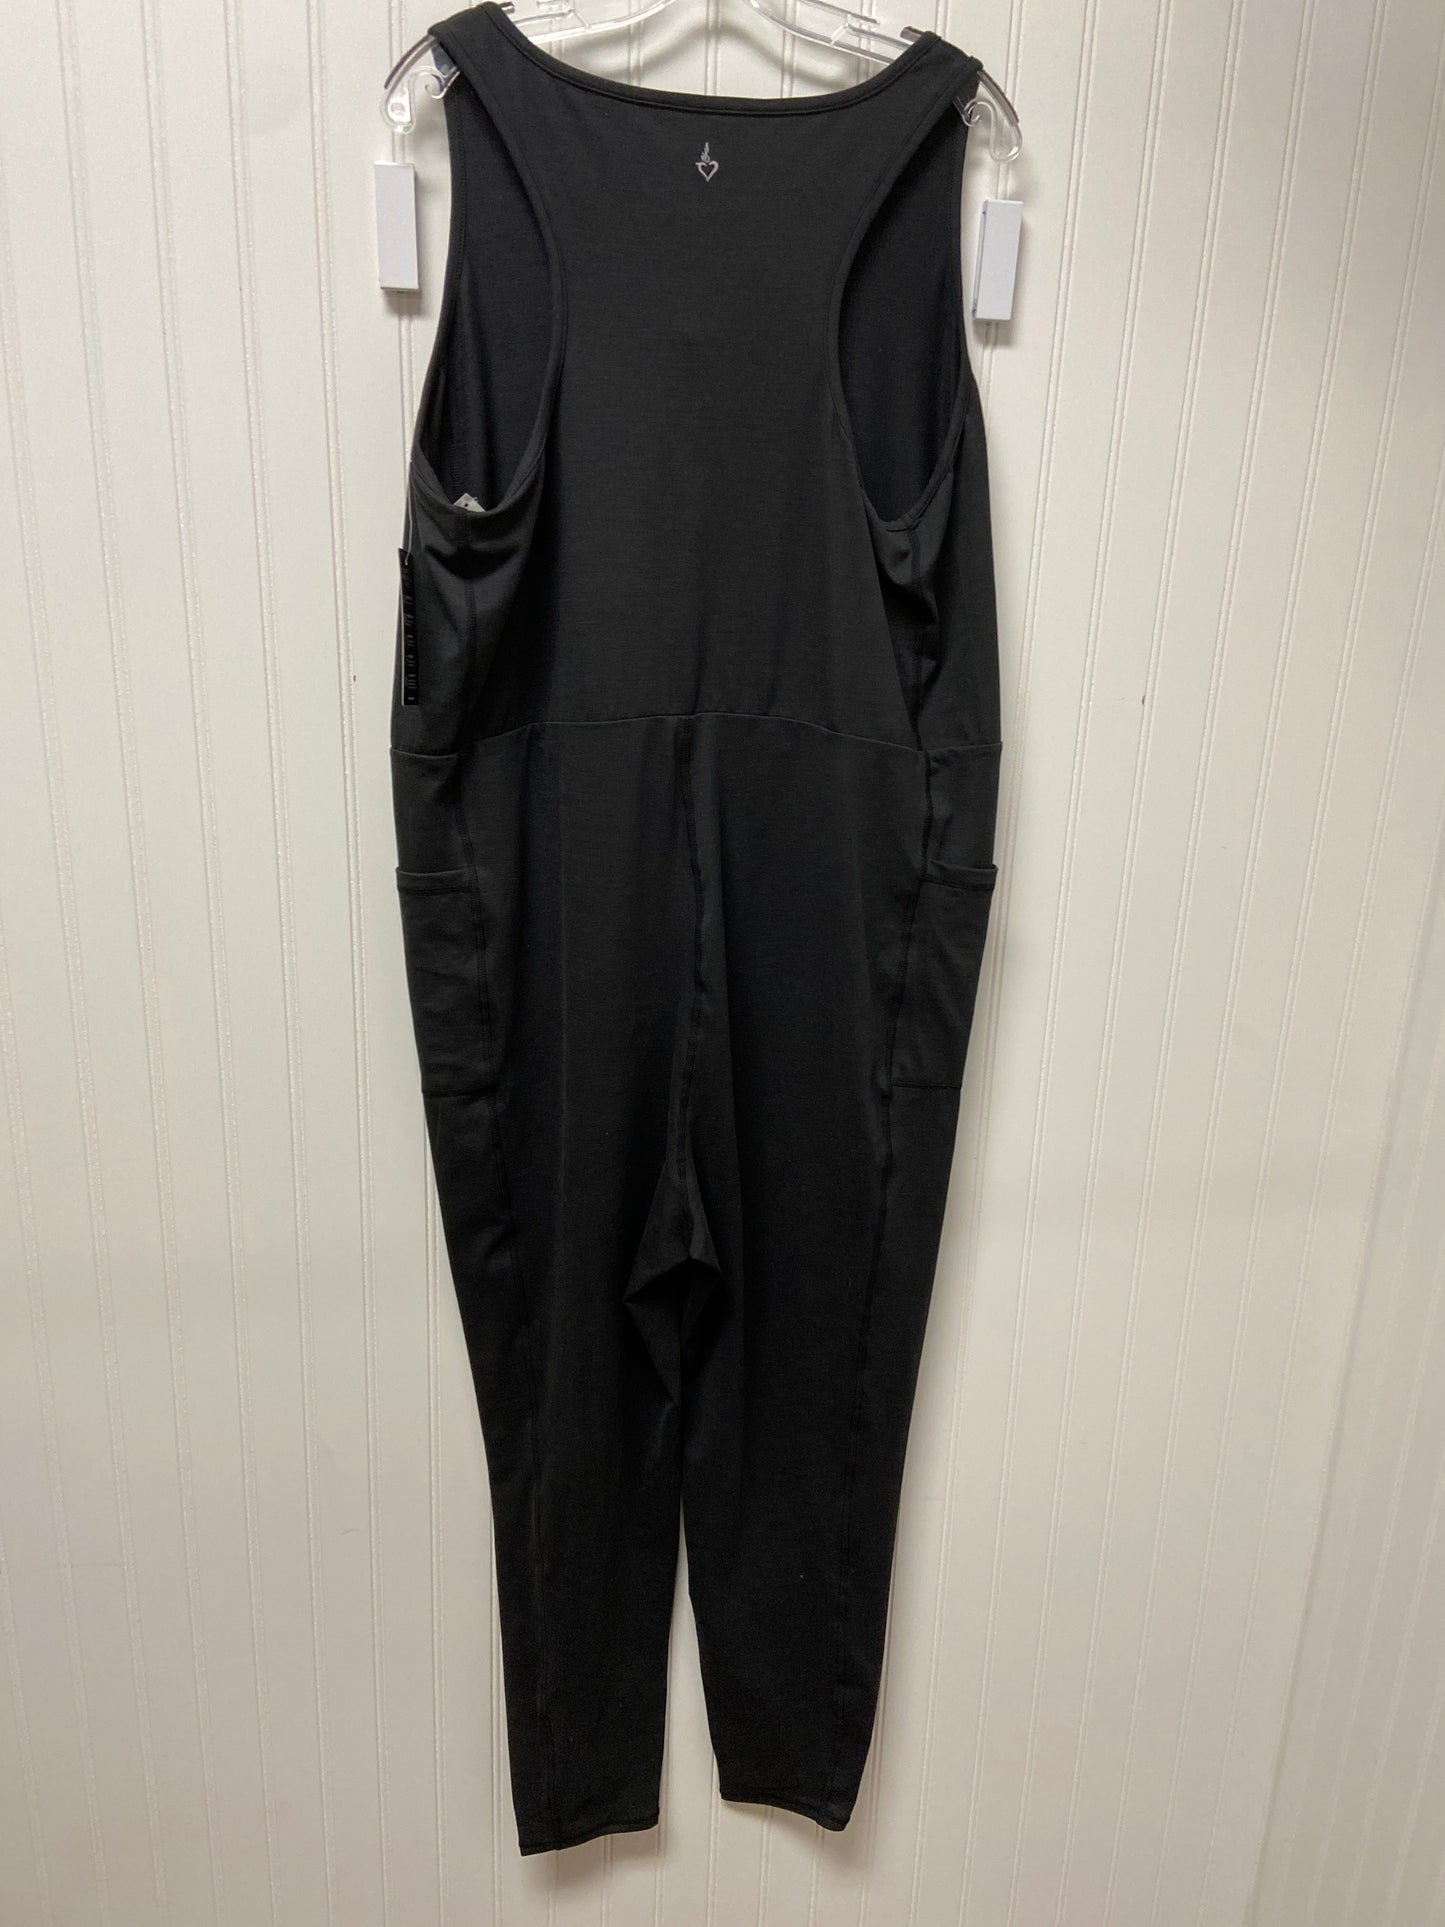 Grey Jumpsuit Torrid, Size 3x